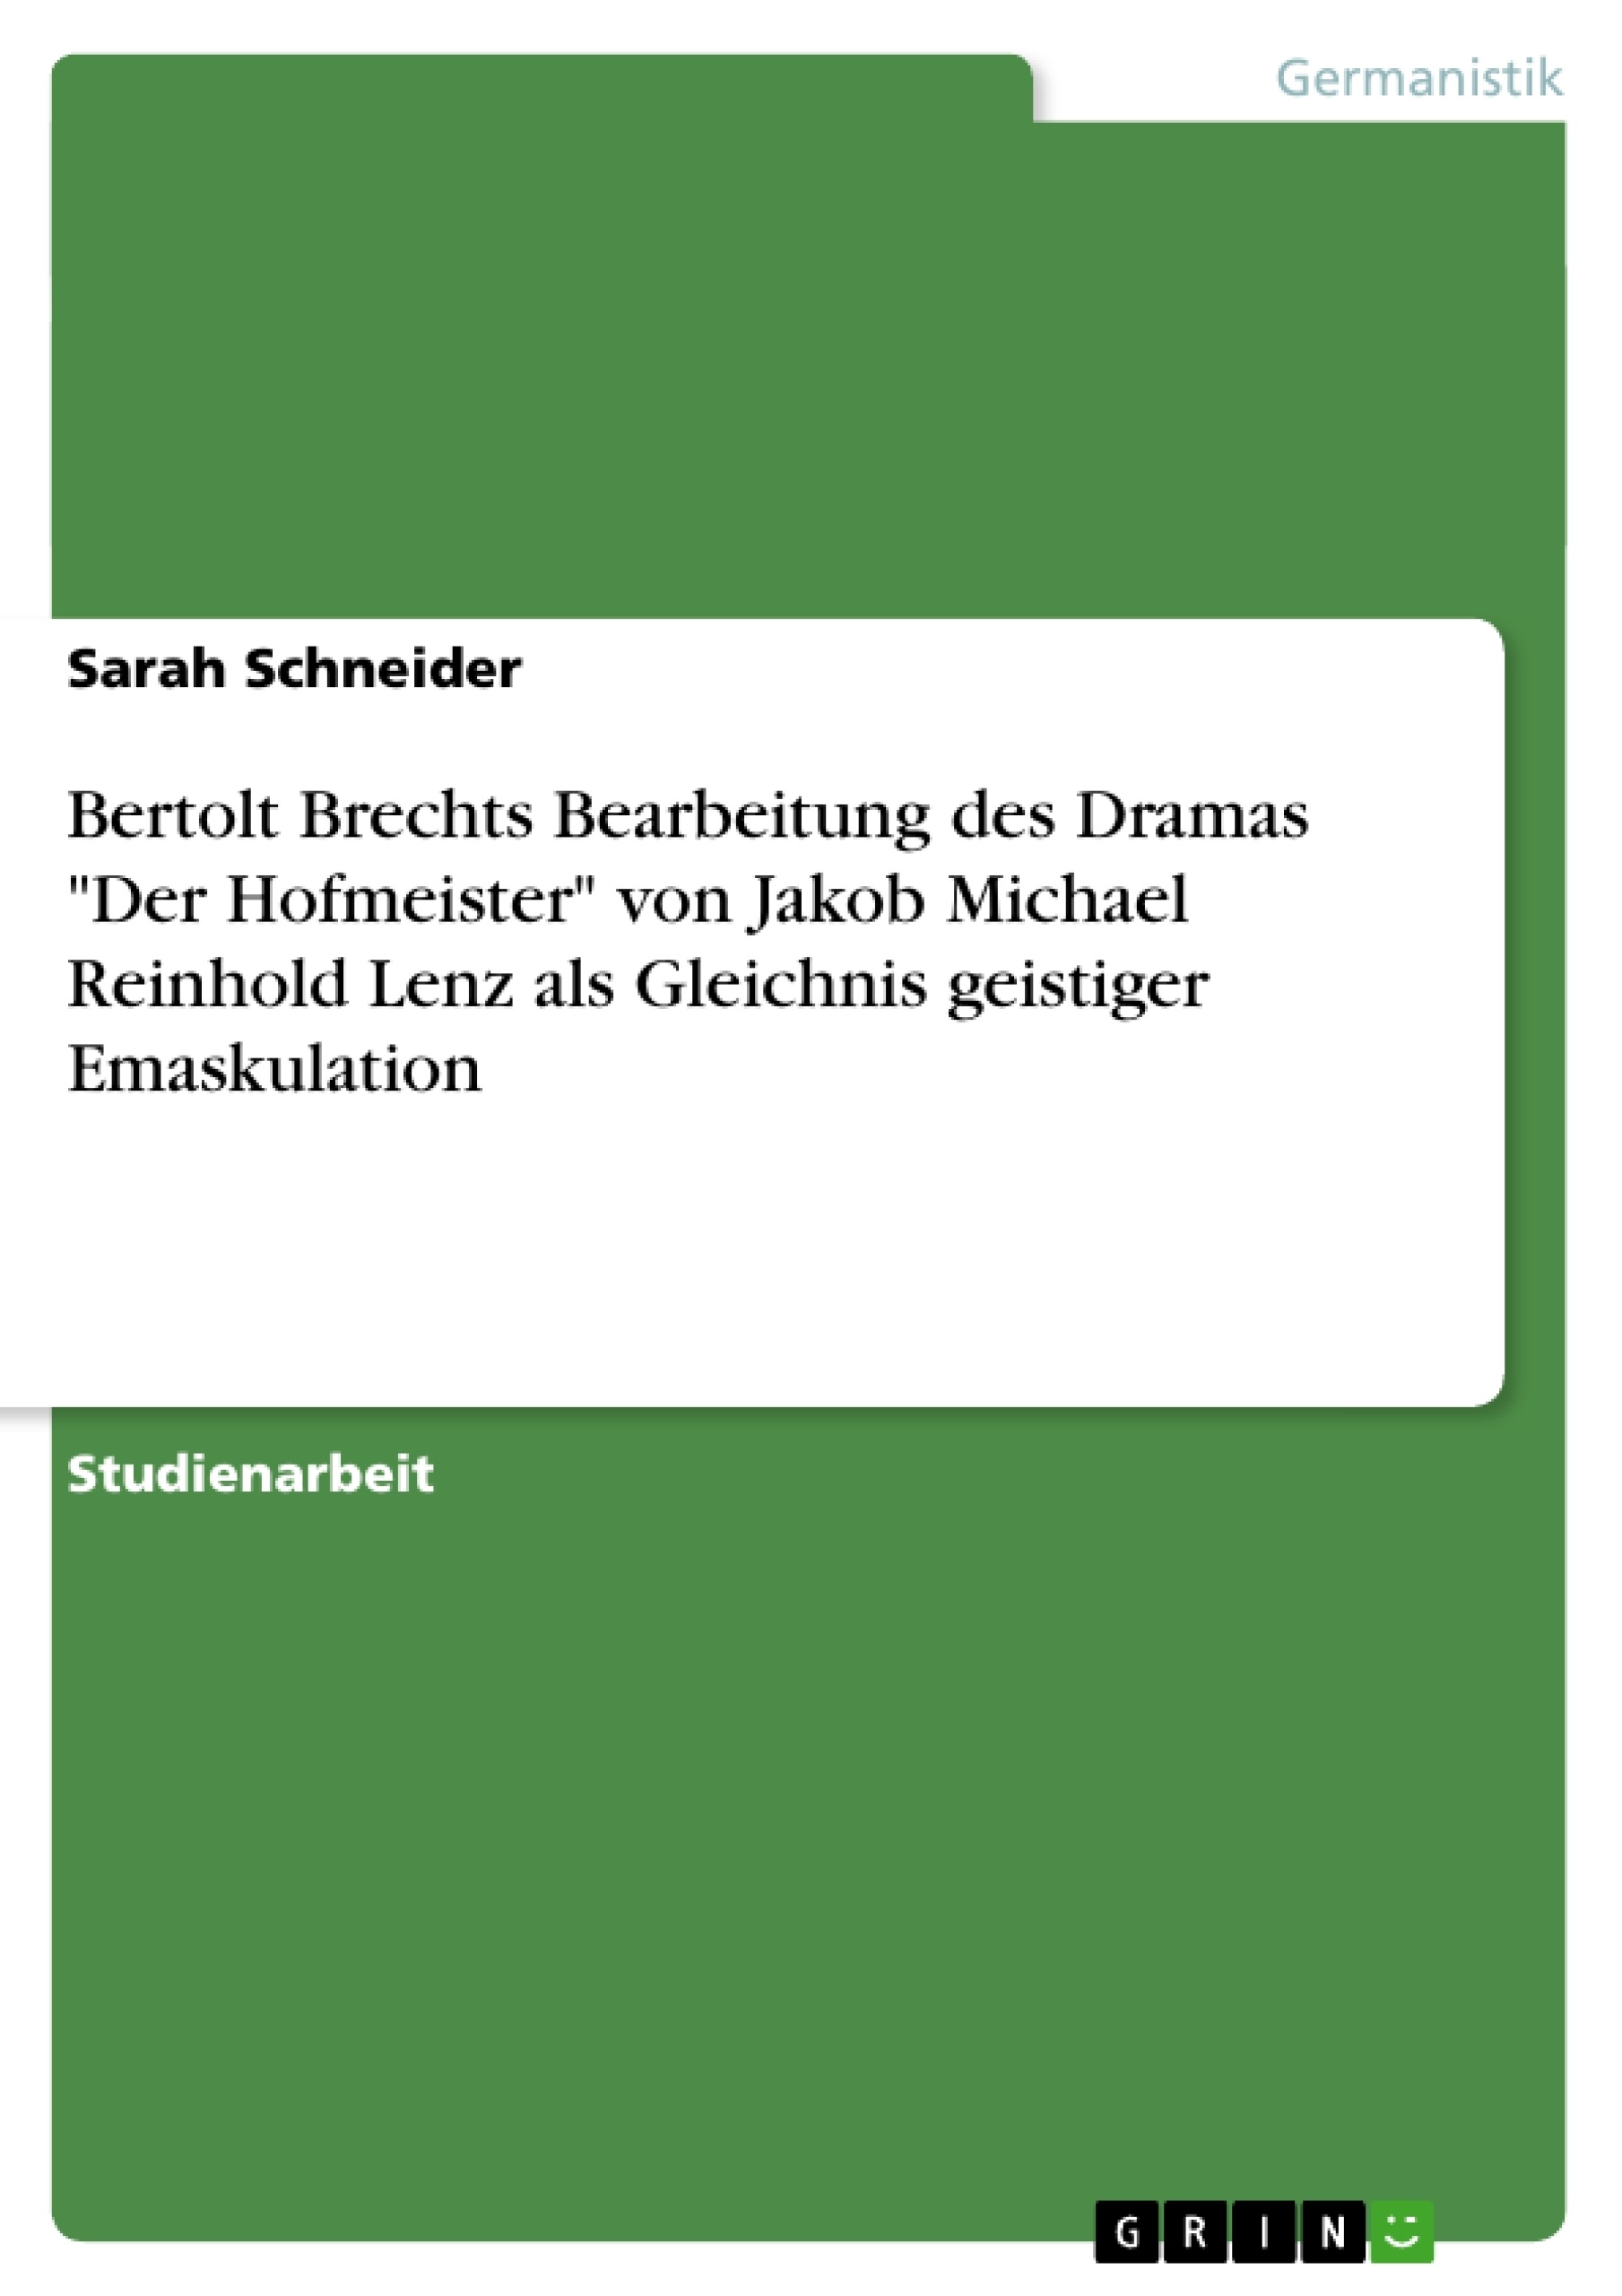 Titre: Bertolt Brechts Bearbeitung des Dramas "Der Hofmeister" von Jakob Michael Reinhold Lenz als Gleichnis geistiger Emaskulation